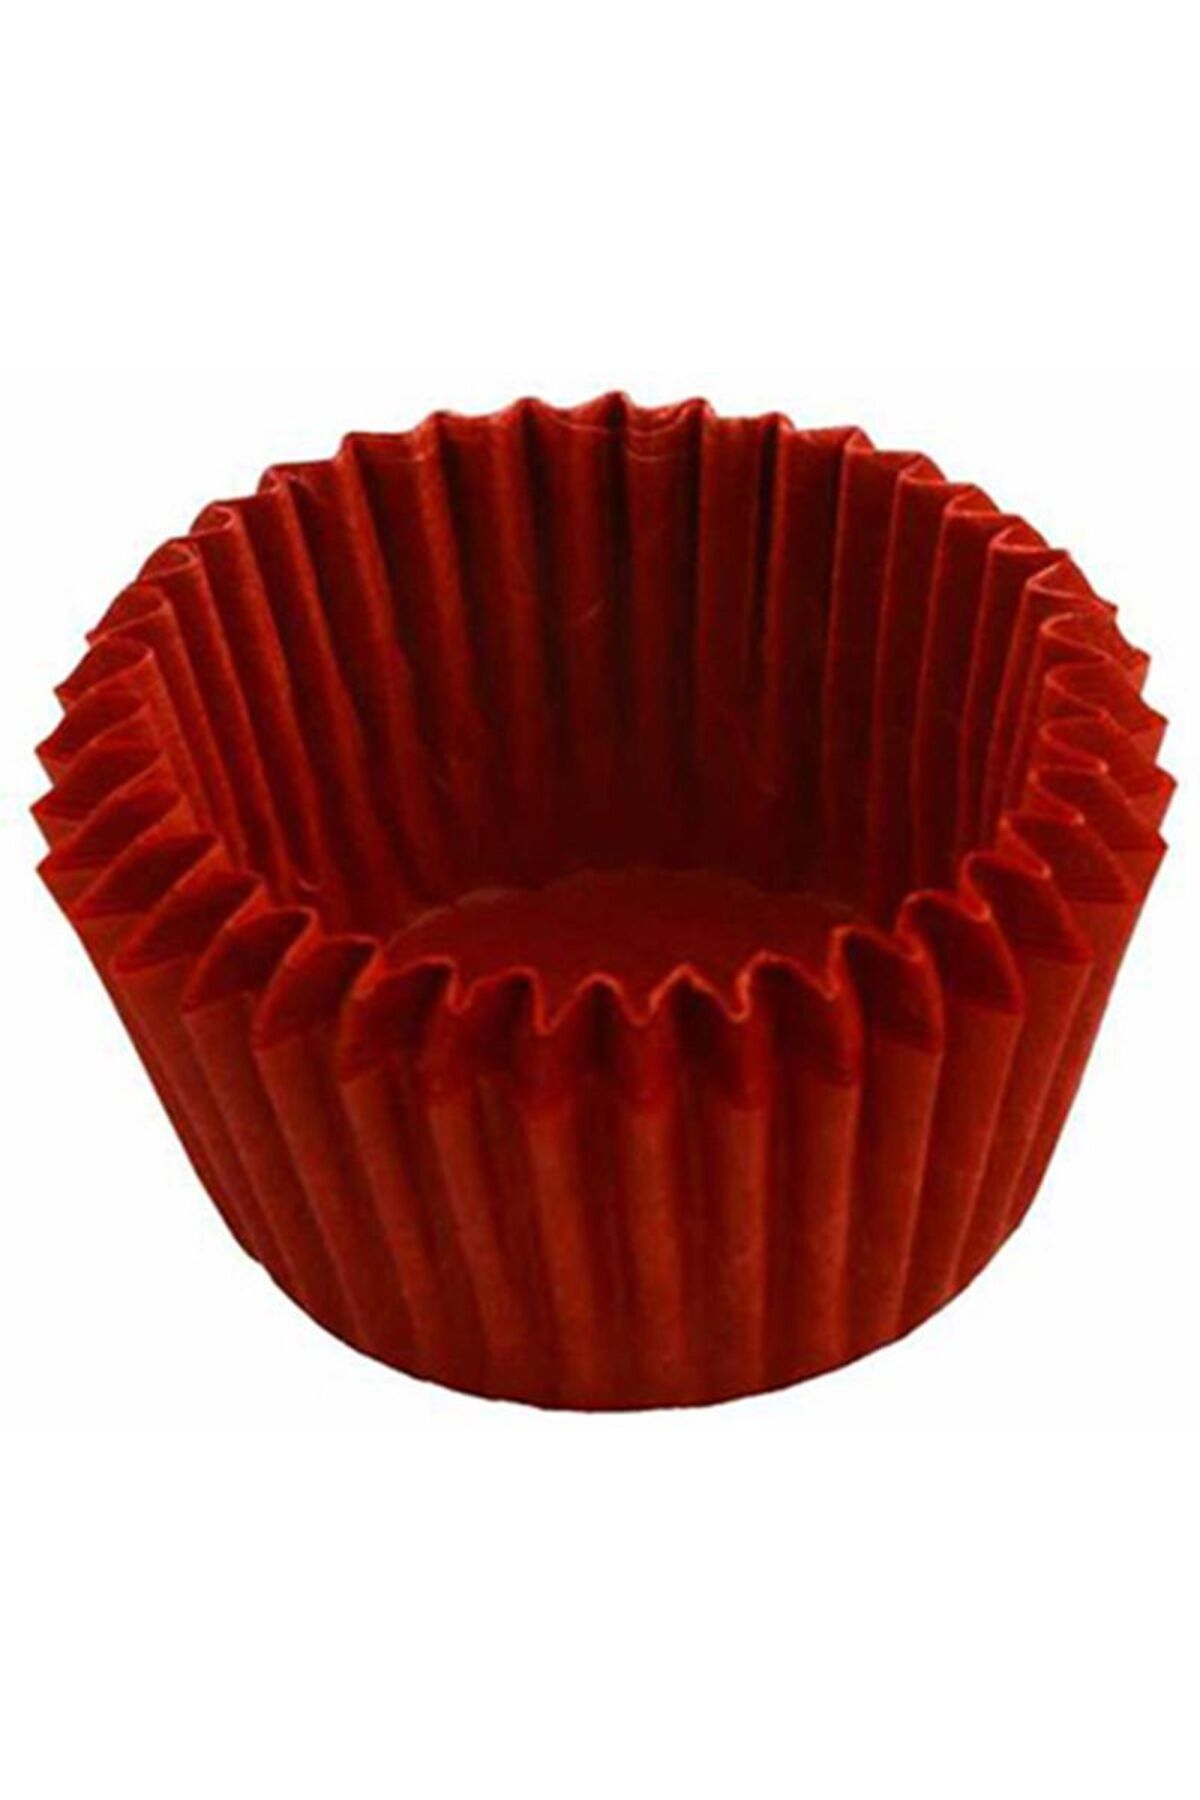 Pandoli Partidolu 100 Lü Muffin Cupcake Kek Kapsülü Kırmızı Renk